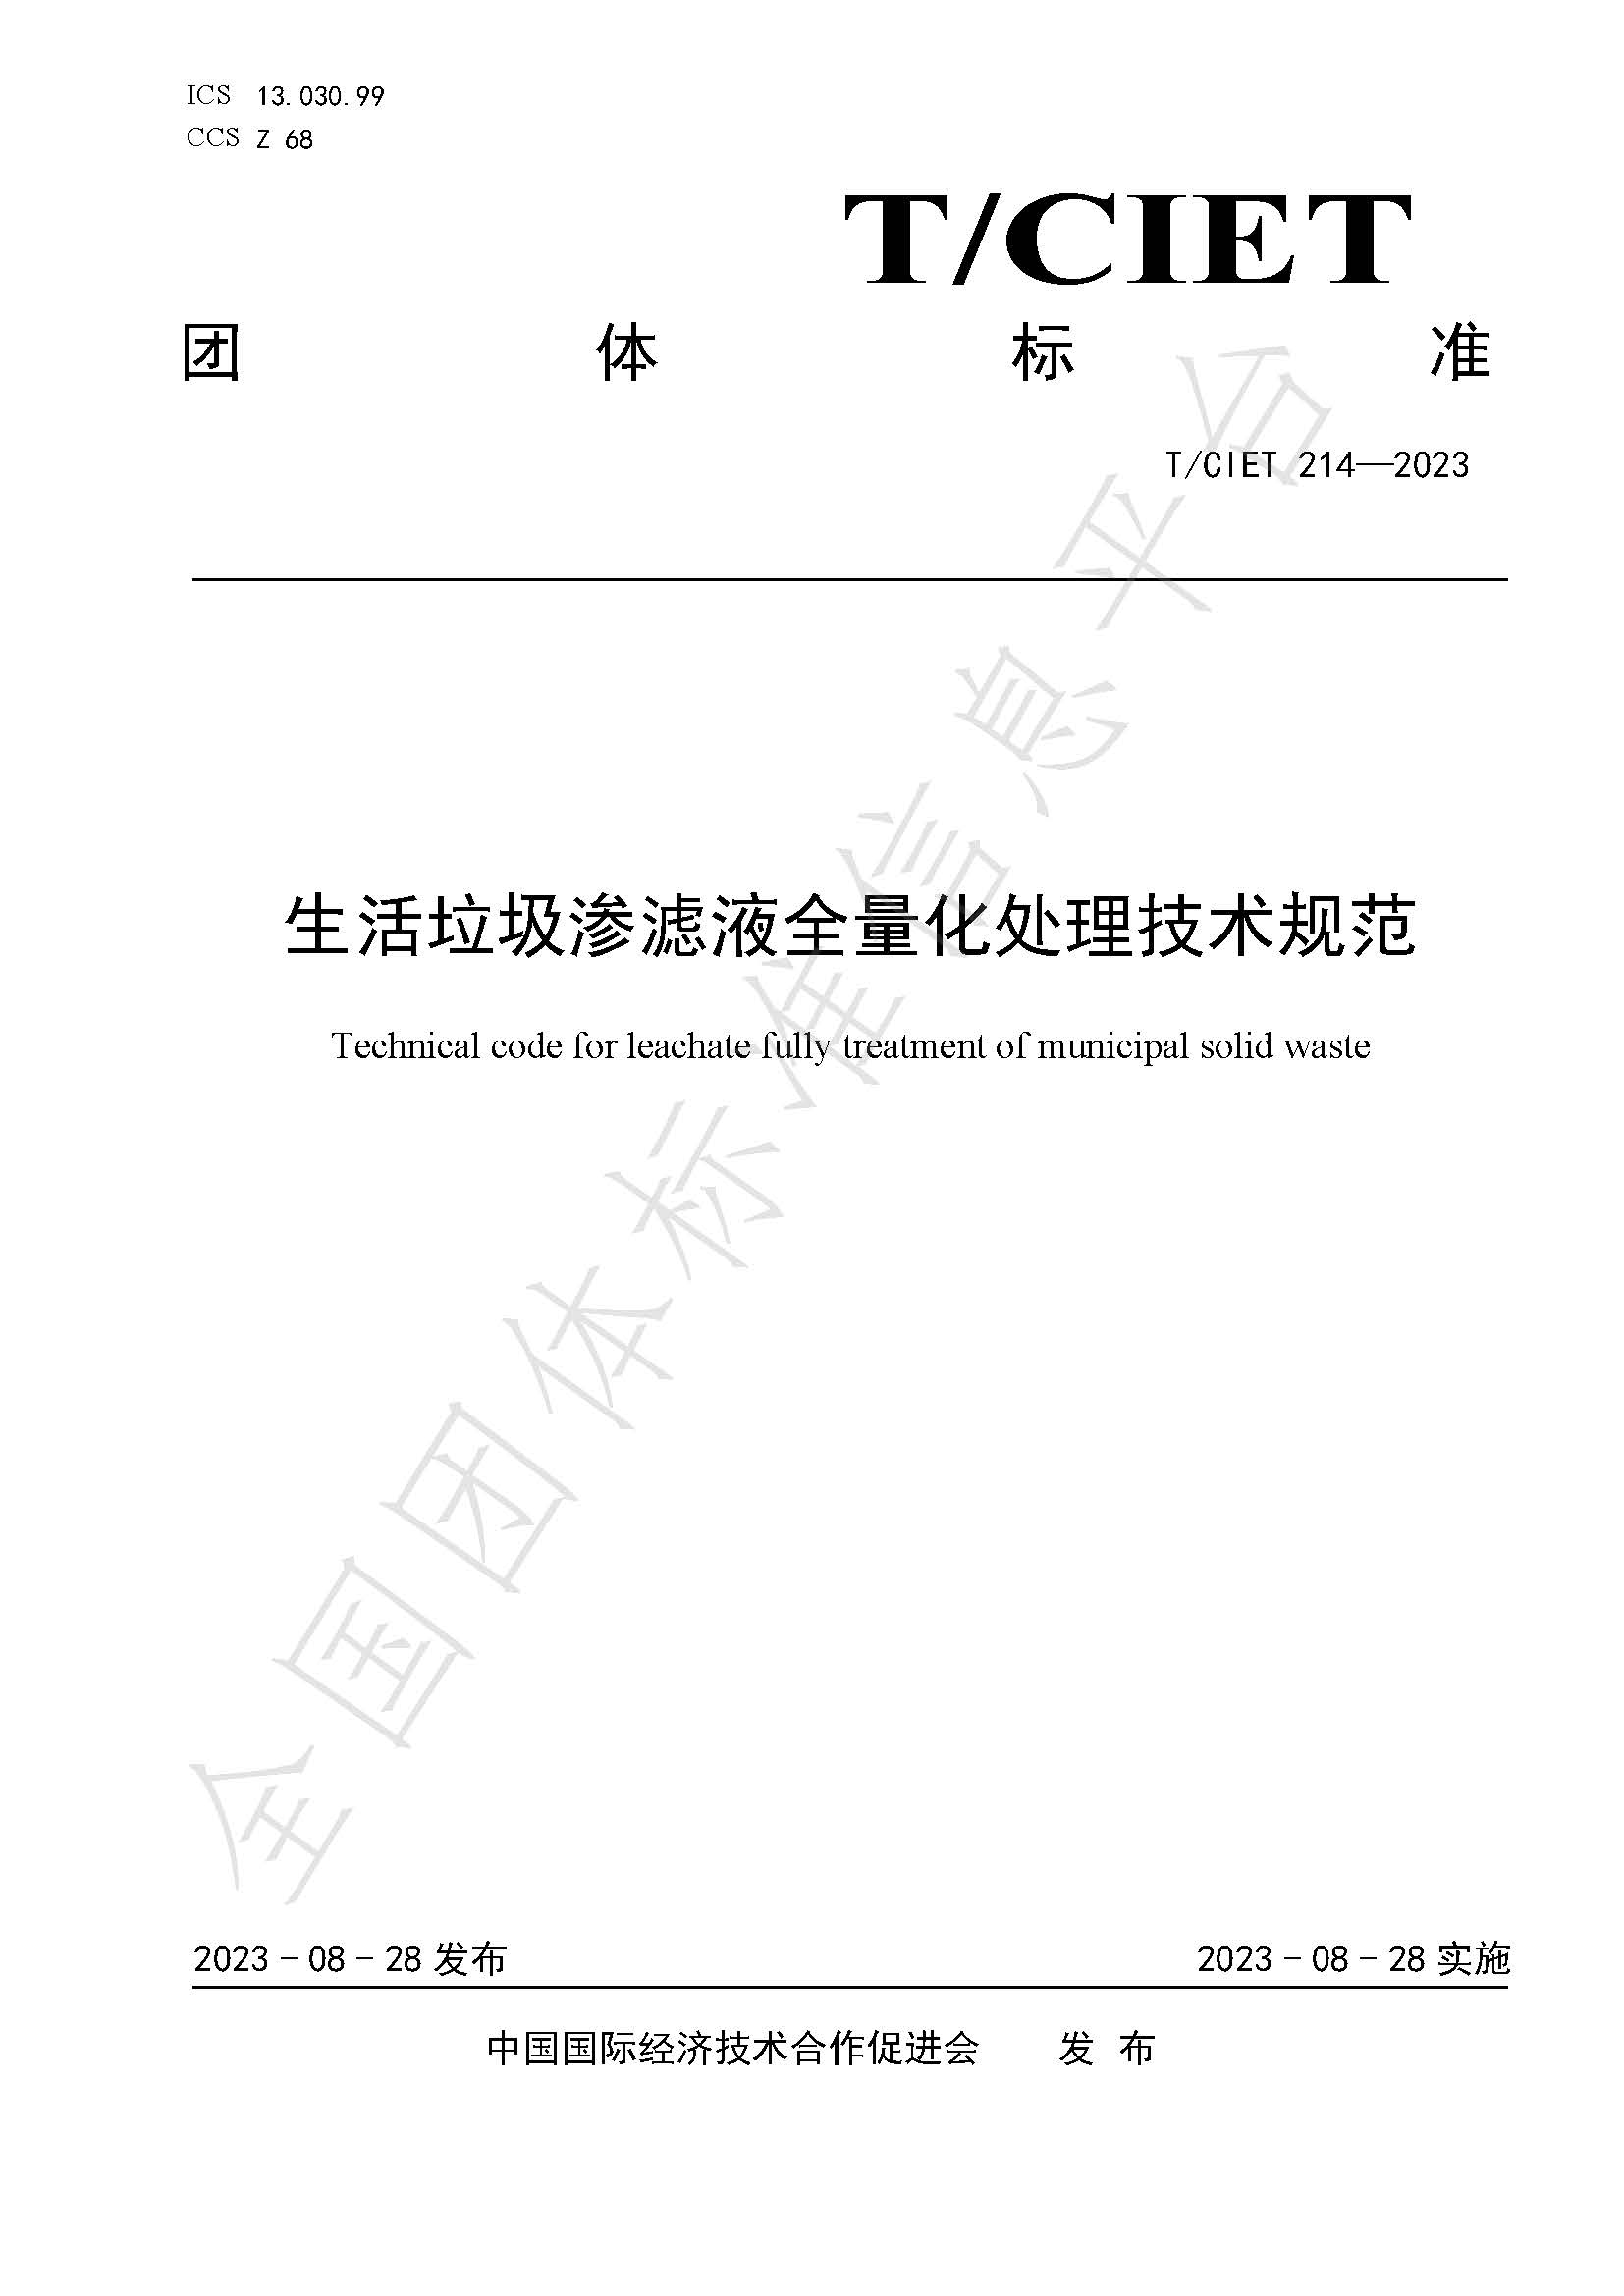 浙江国清环保 团体标准《生活垃圾渗滤液全量化处理技术规范》正式发布